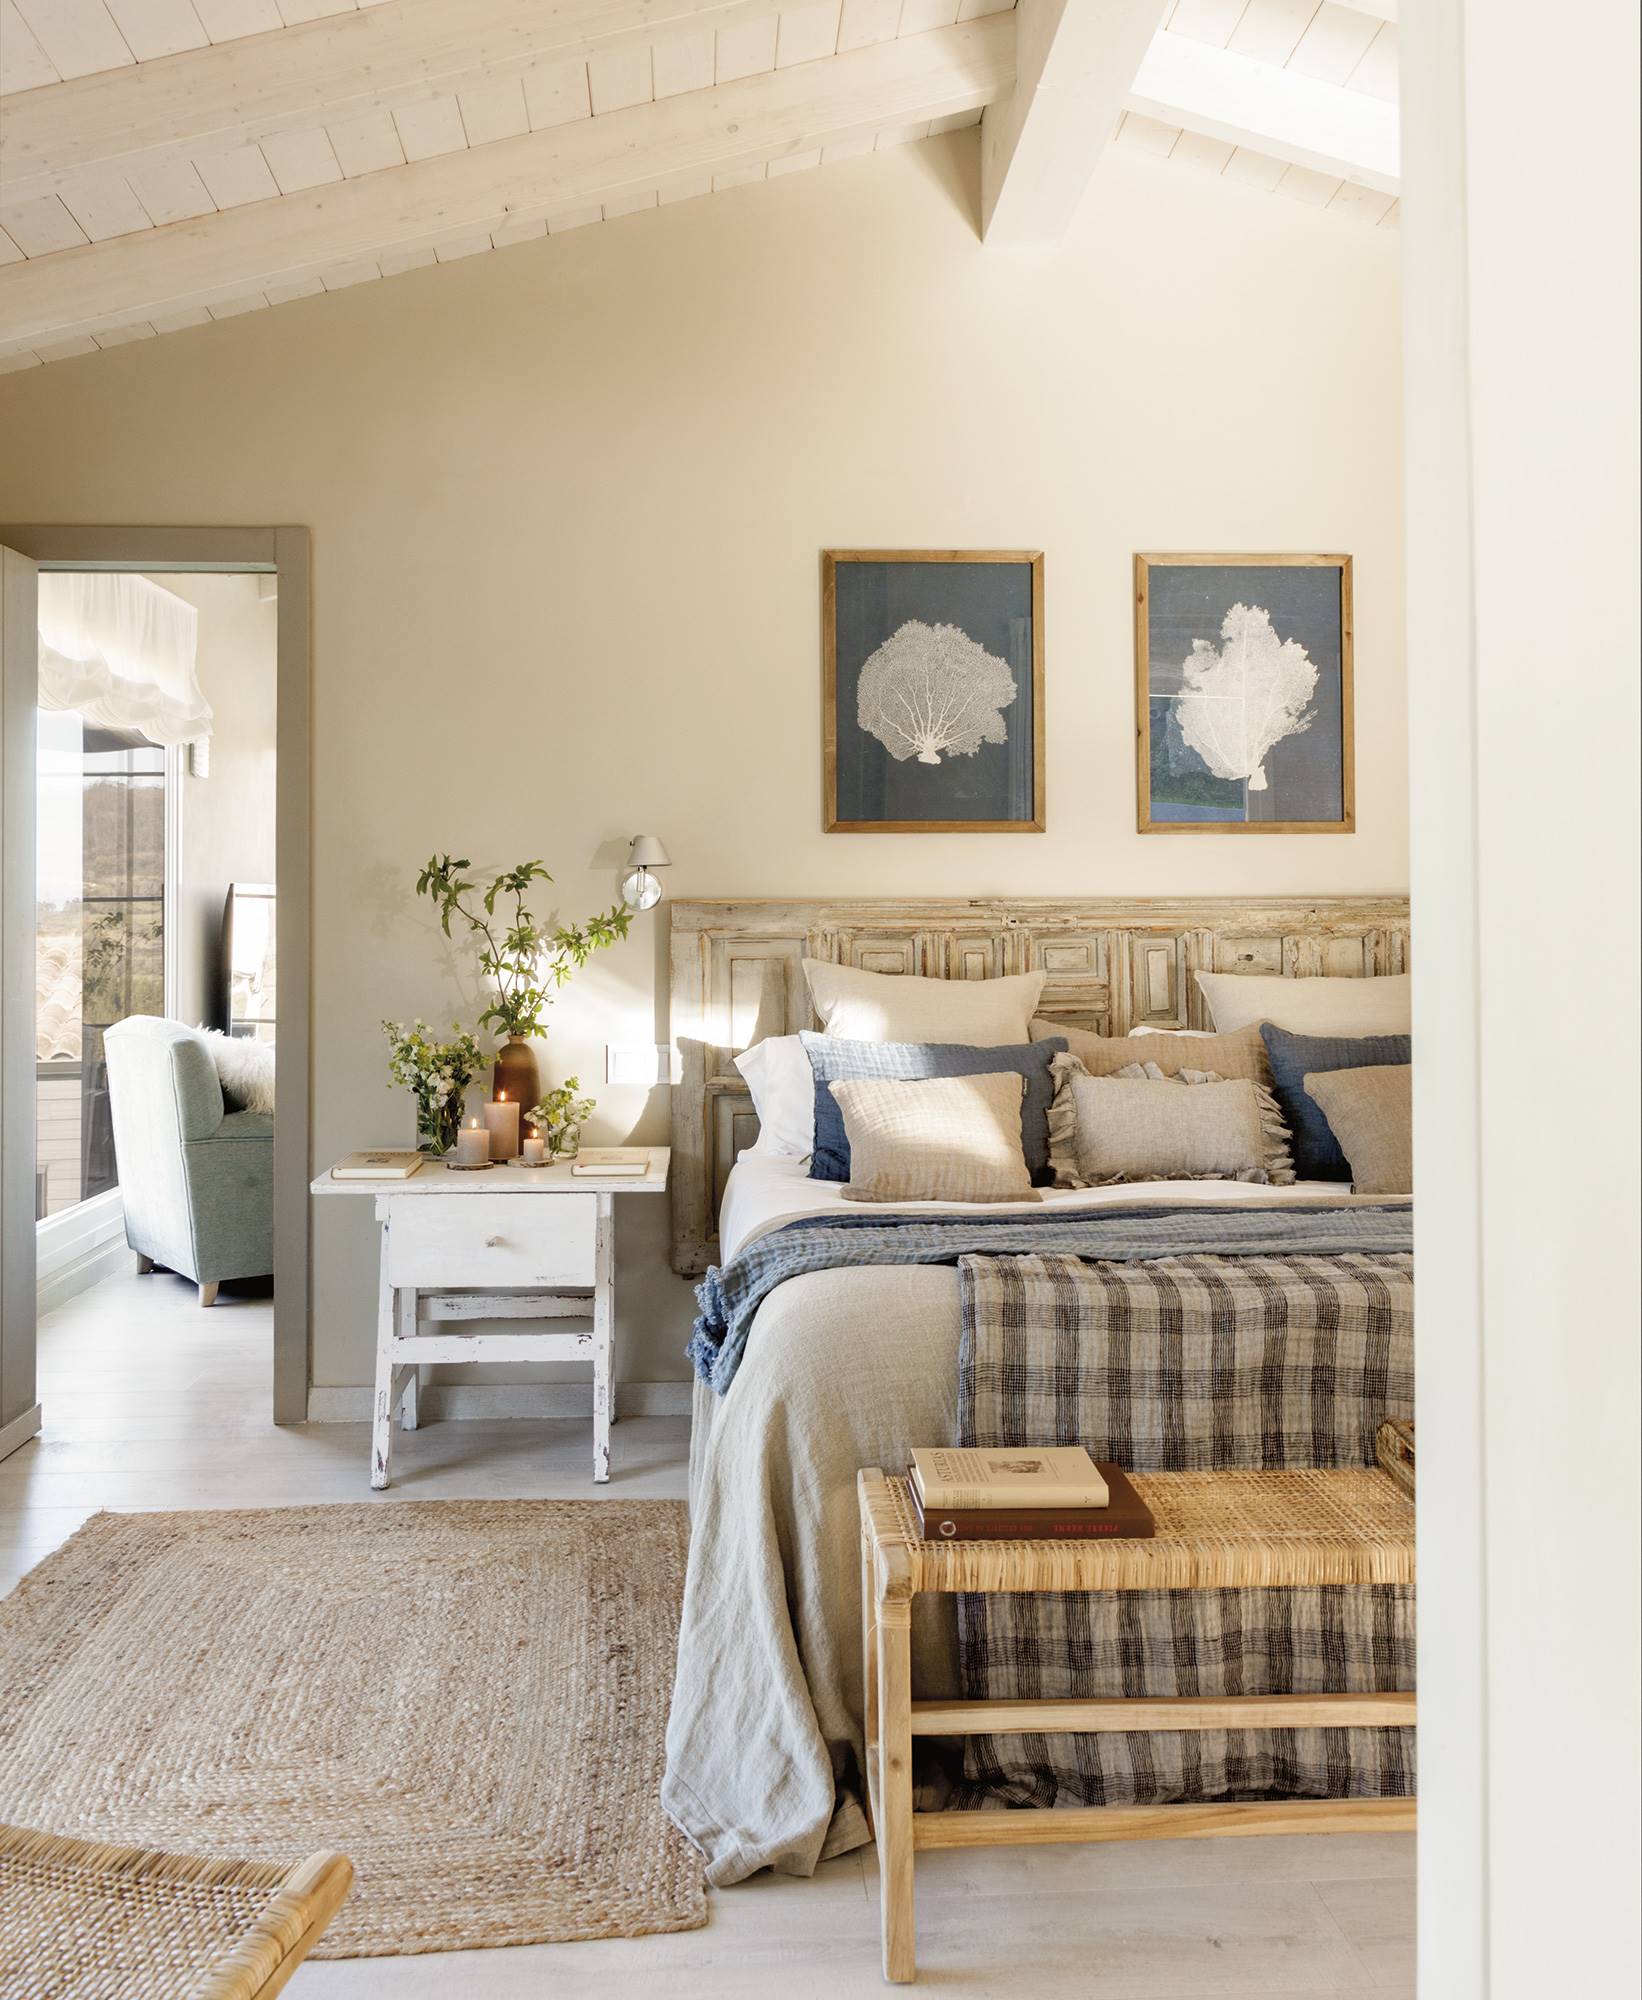 Dormitorio en una cabaña de montaña, de estilo romántico con cabecero recuperado y ropa de cama a cuadros.